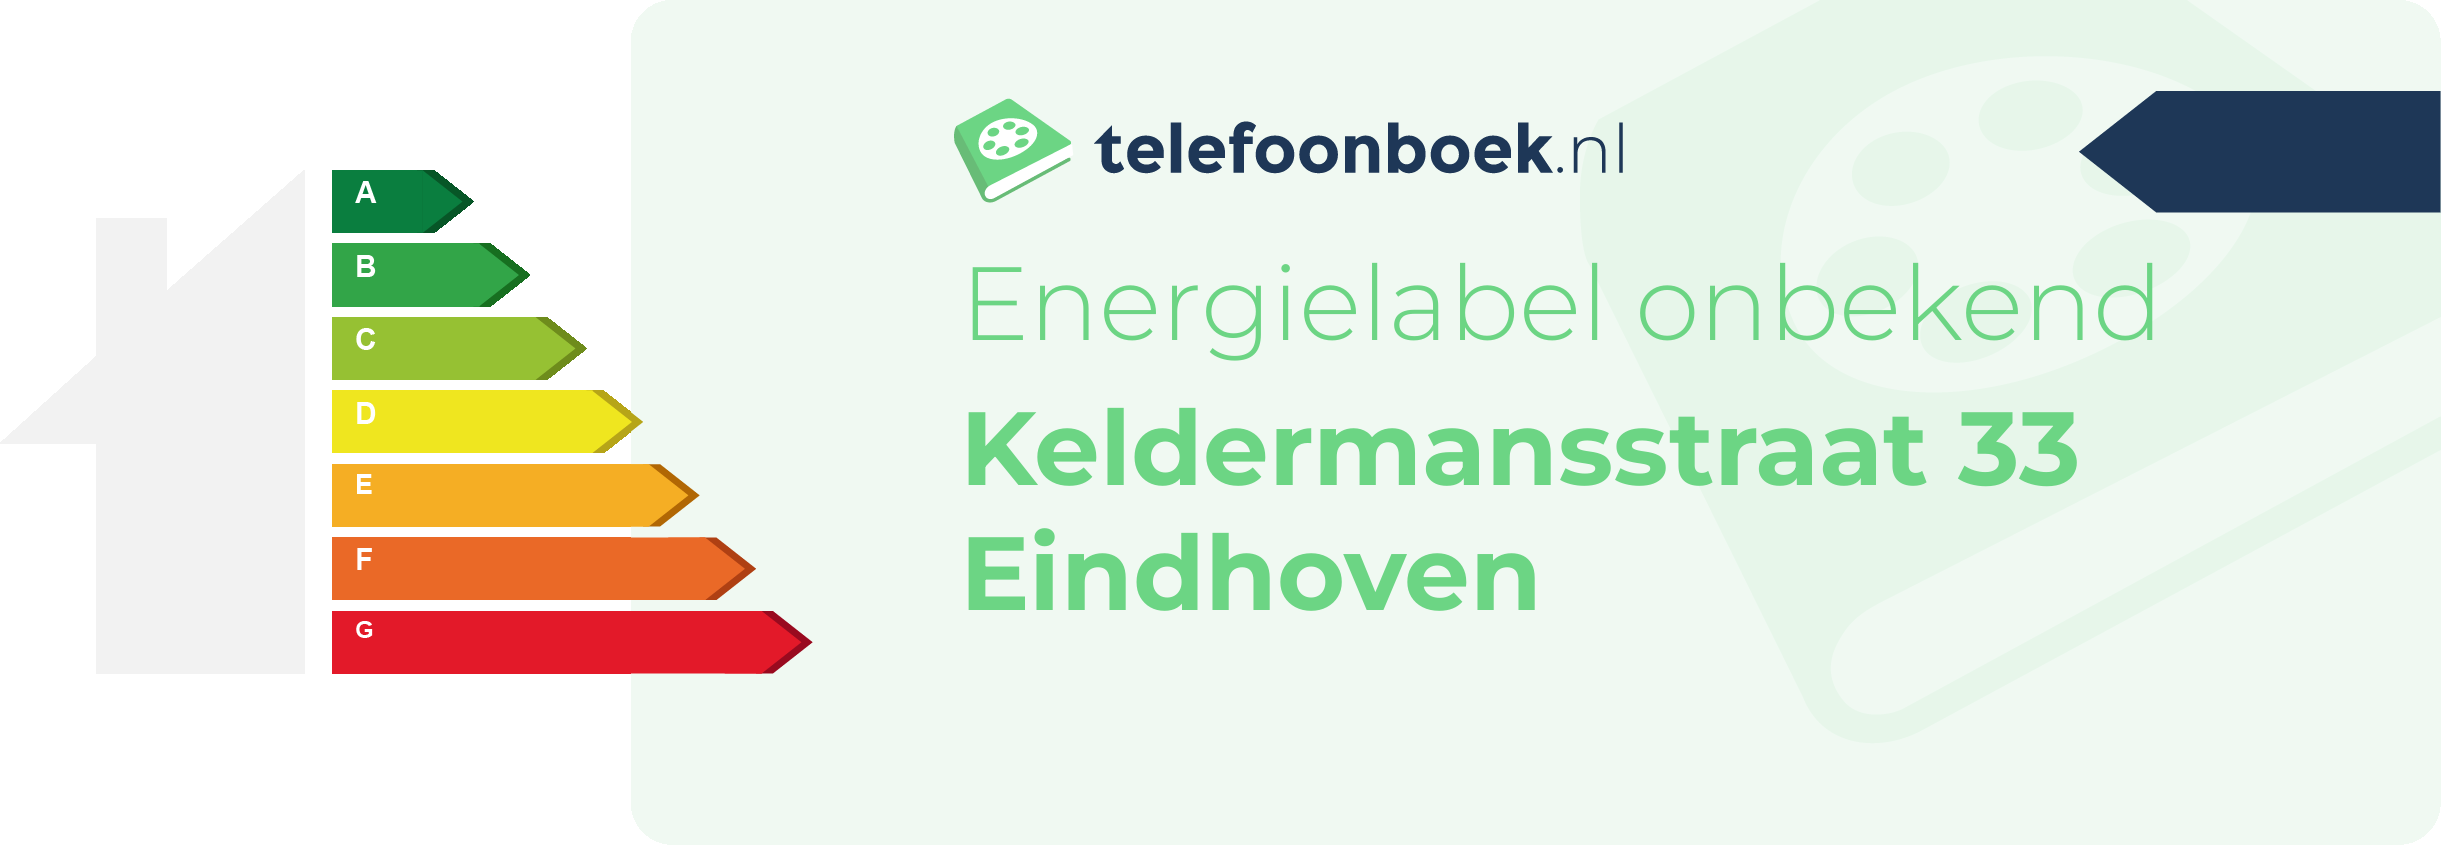 Energielabel Keldermansstraat 33 Eindhoven